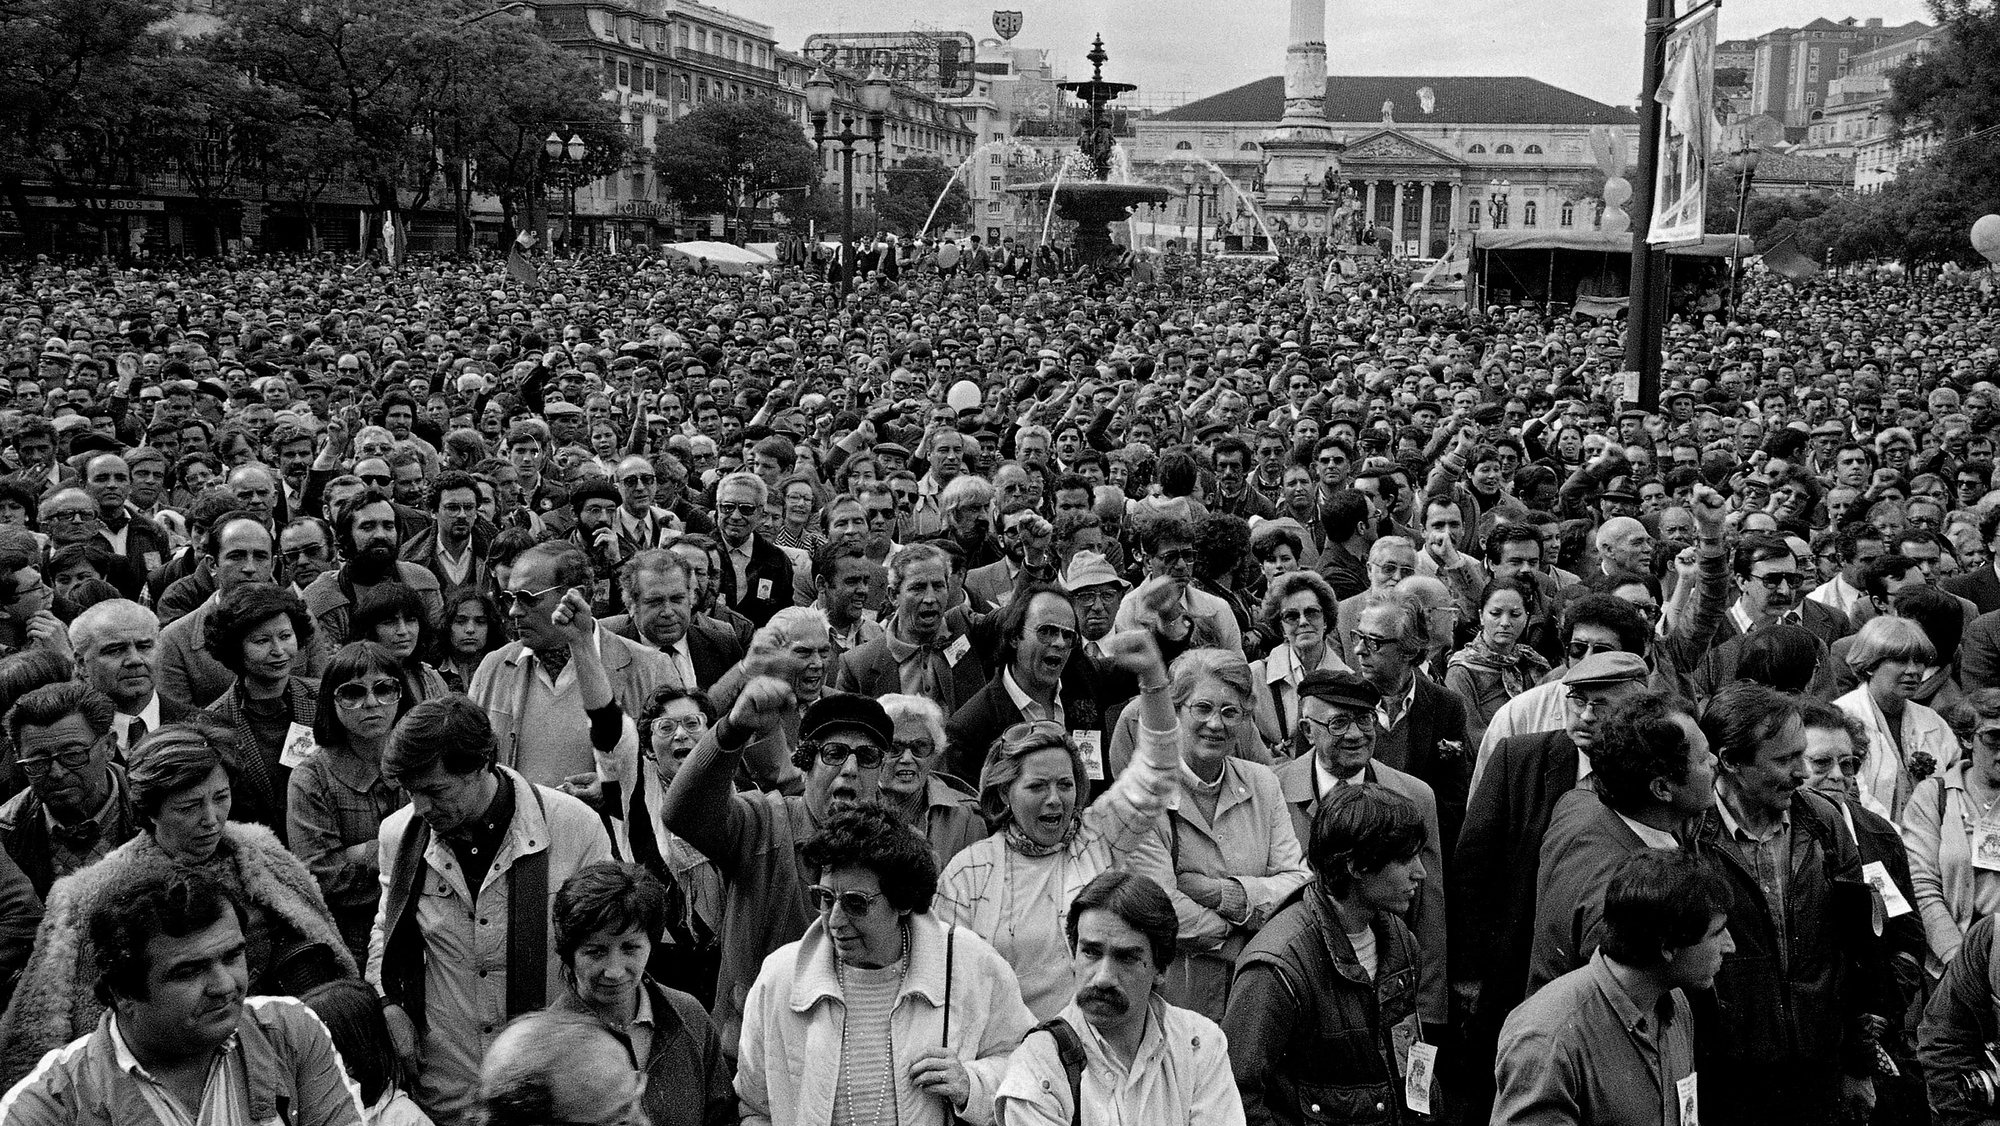 Multidão de pessoas no Rossio em Lisboa, nas comemorações do 25 de abril.  Lisboa, 25 de abril de 1985.

Alfredo Cunha / Lusa